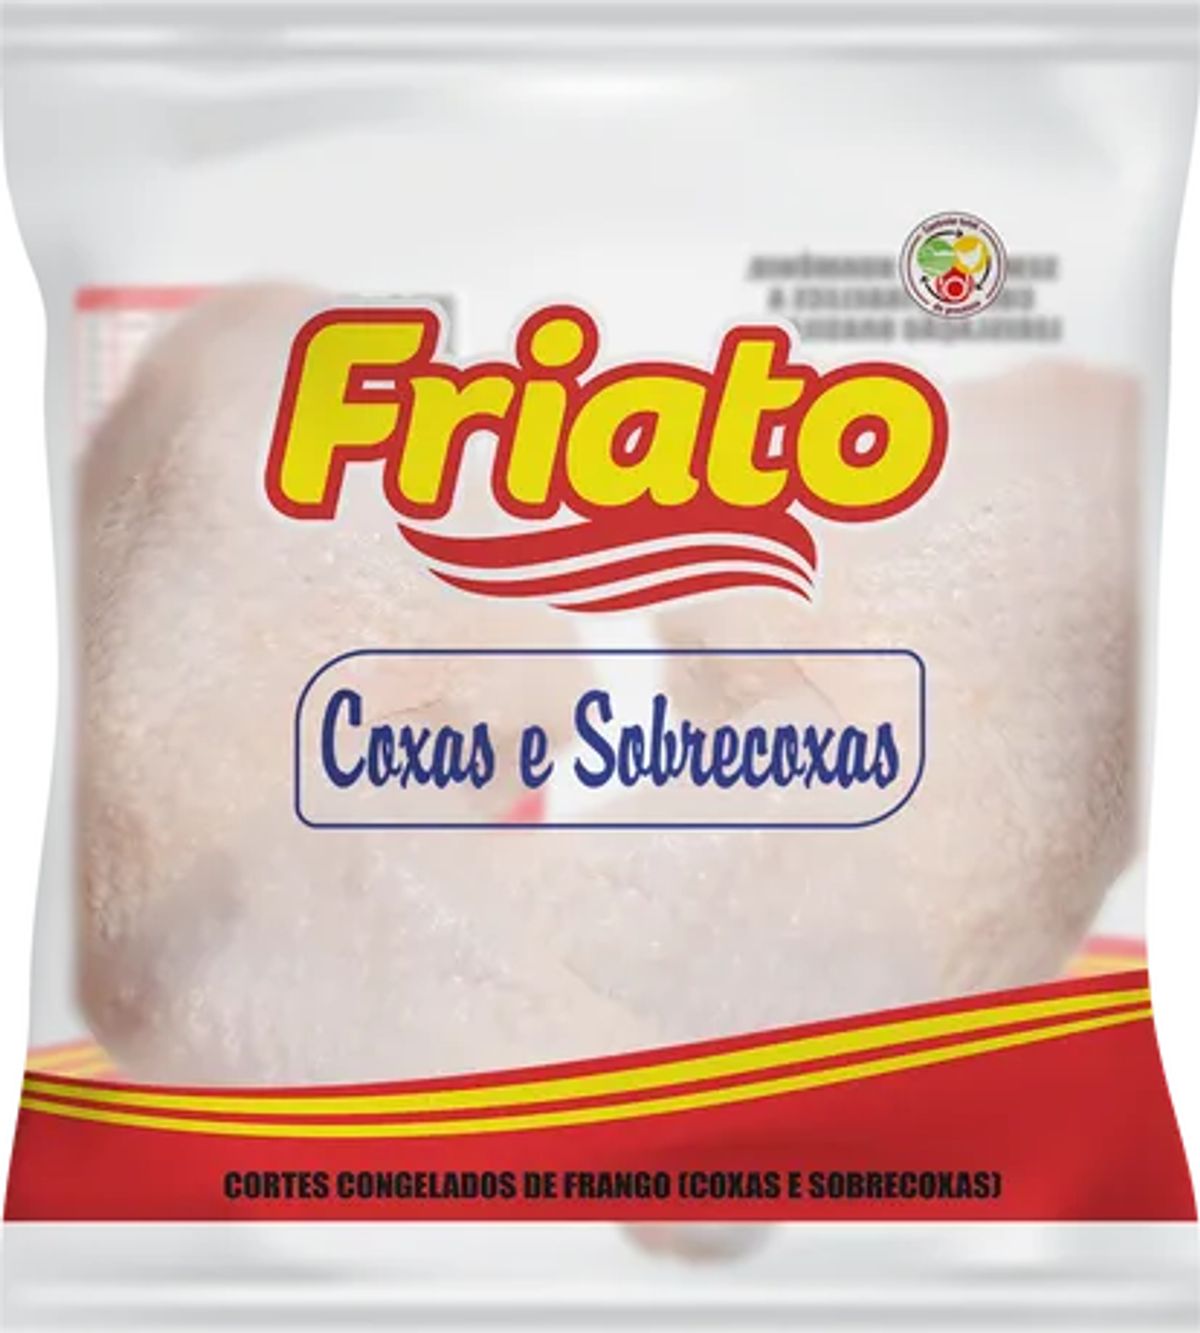 Coxa e Sobrecoxa de Frango Congelado Friato Aprox.1,4kg image number 0